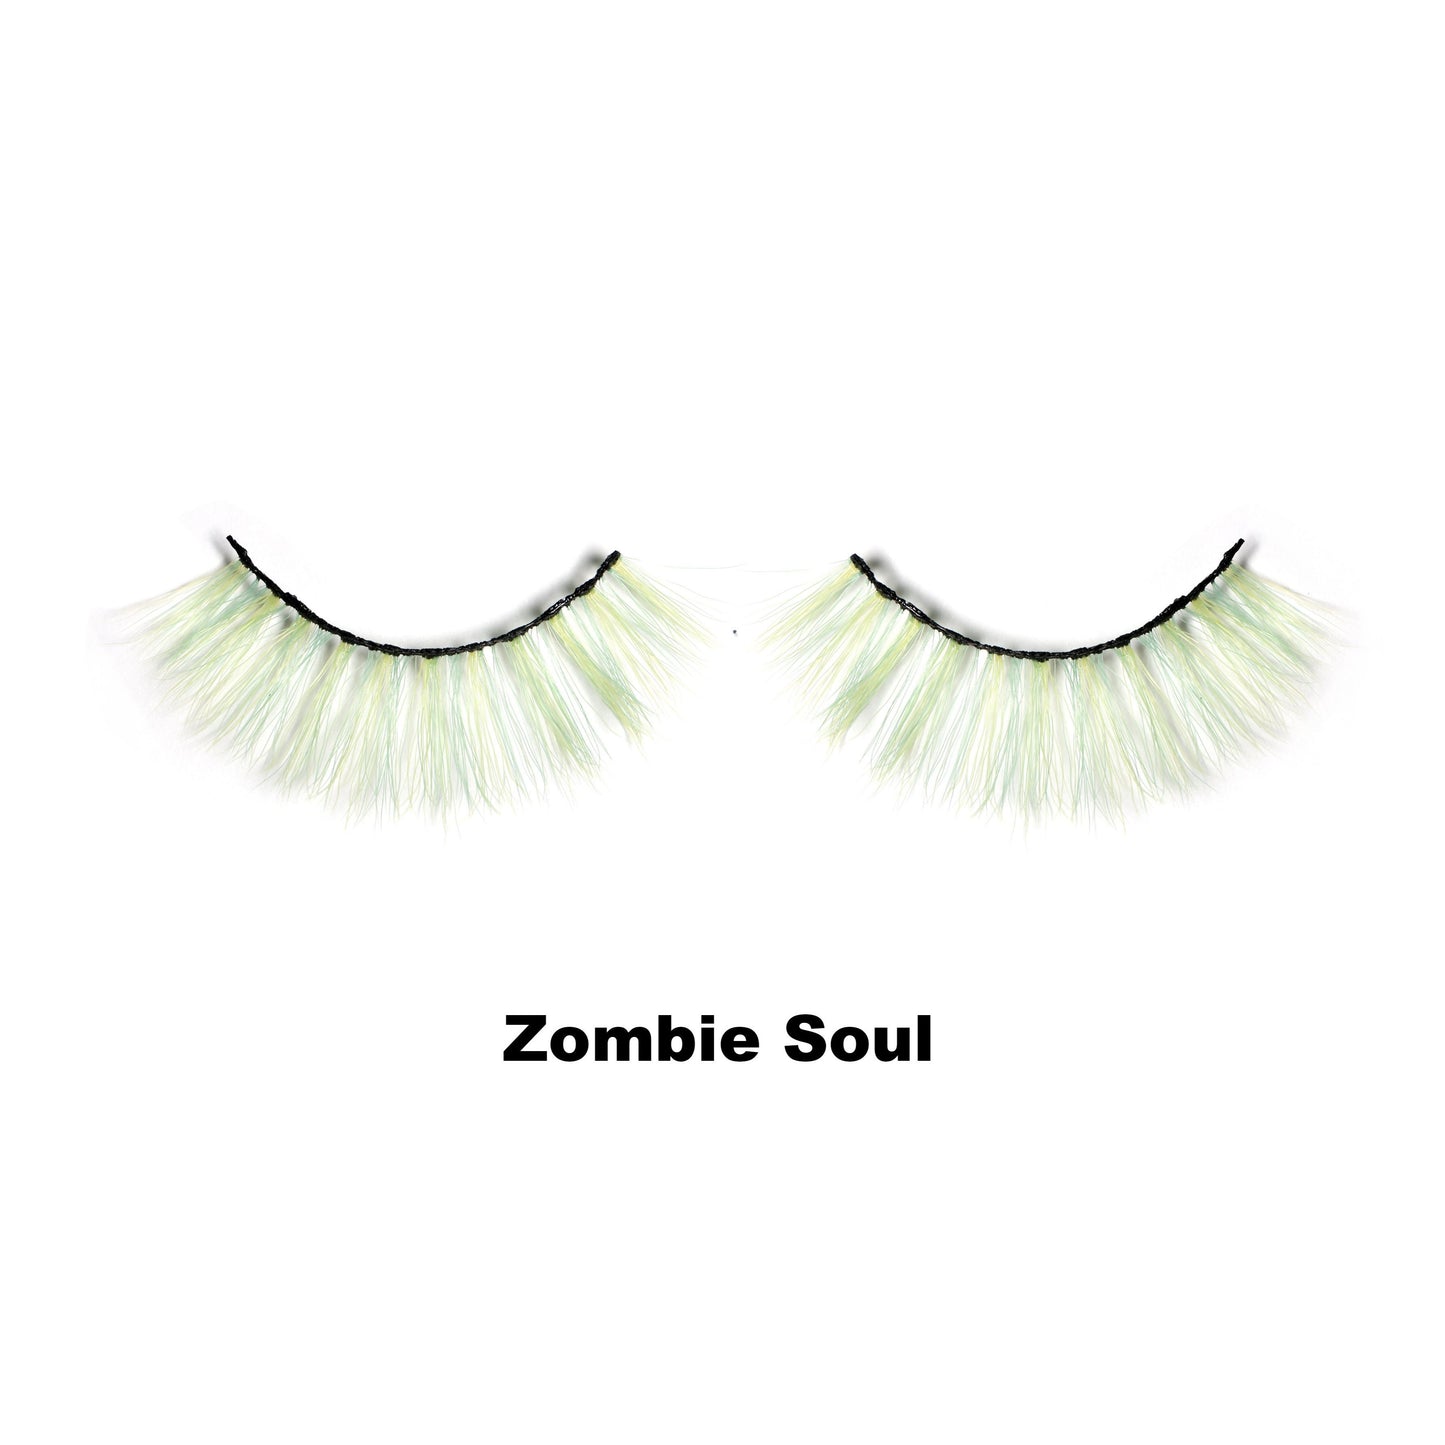 "Zombie soul" Lashes